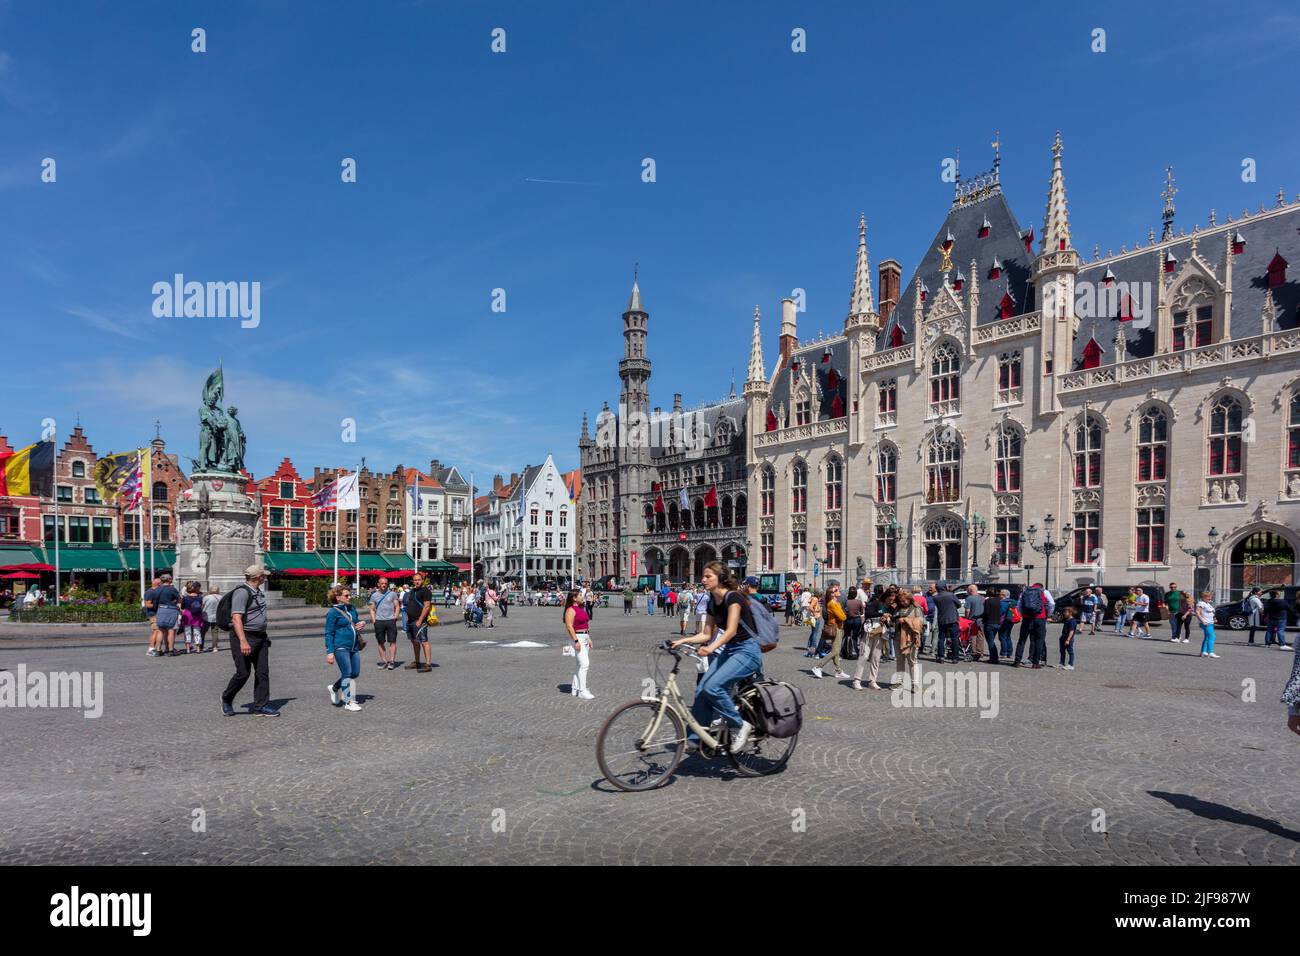 Le bâtiment de la Cour provinciale à la place du marché, Bruges. Belgique. Banque D'Images